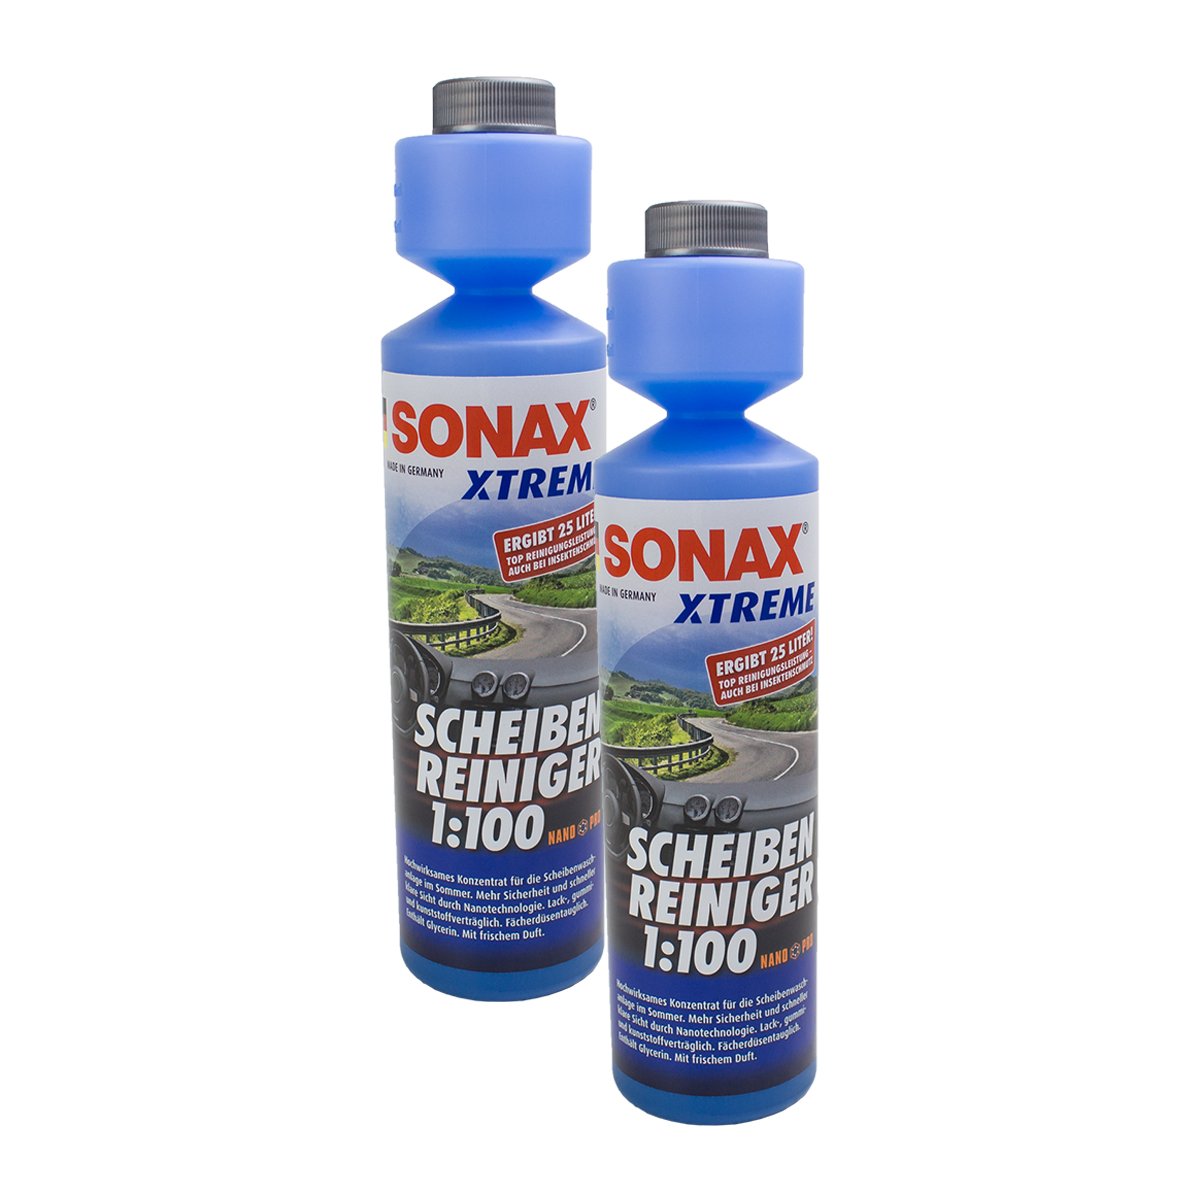 SONAX 2X 02711410 Xtreme ScheibenReiniger 1:100 NanoPro Konzentrat 250ml von SONAX